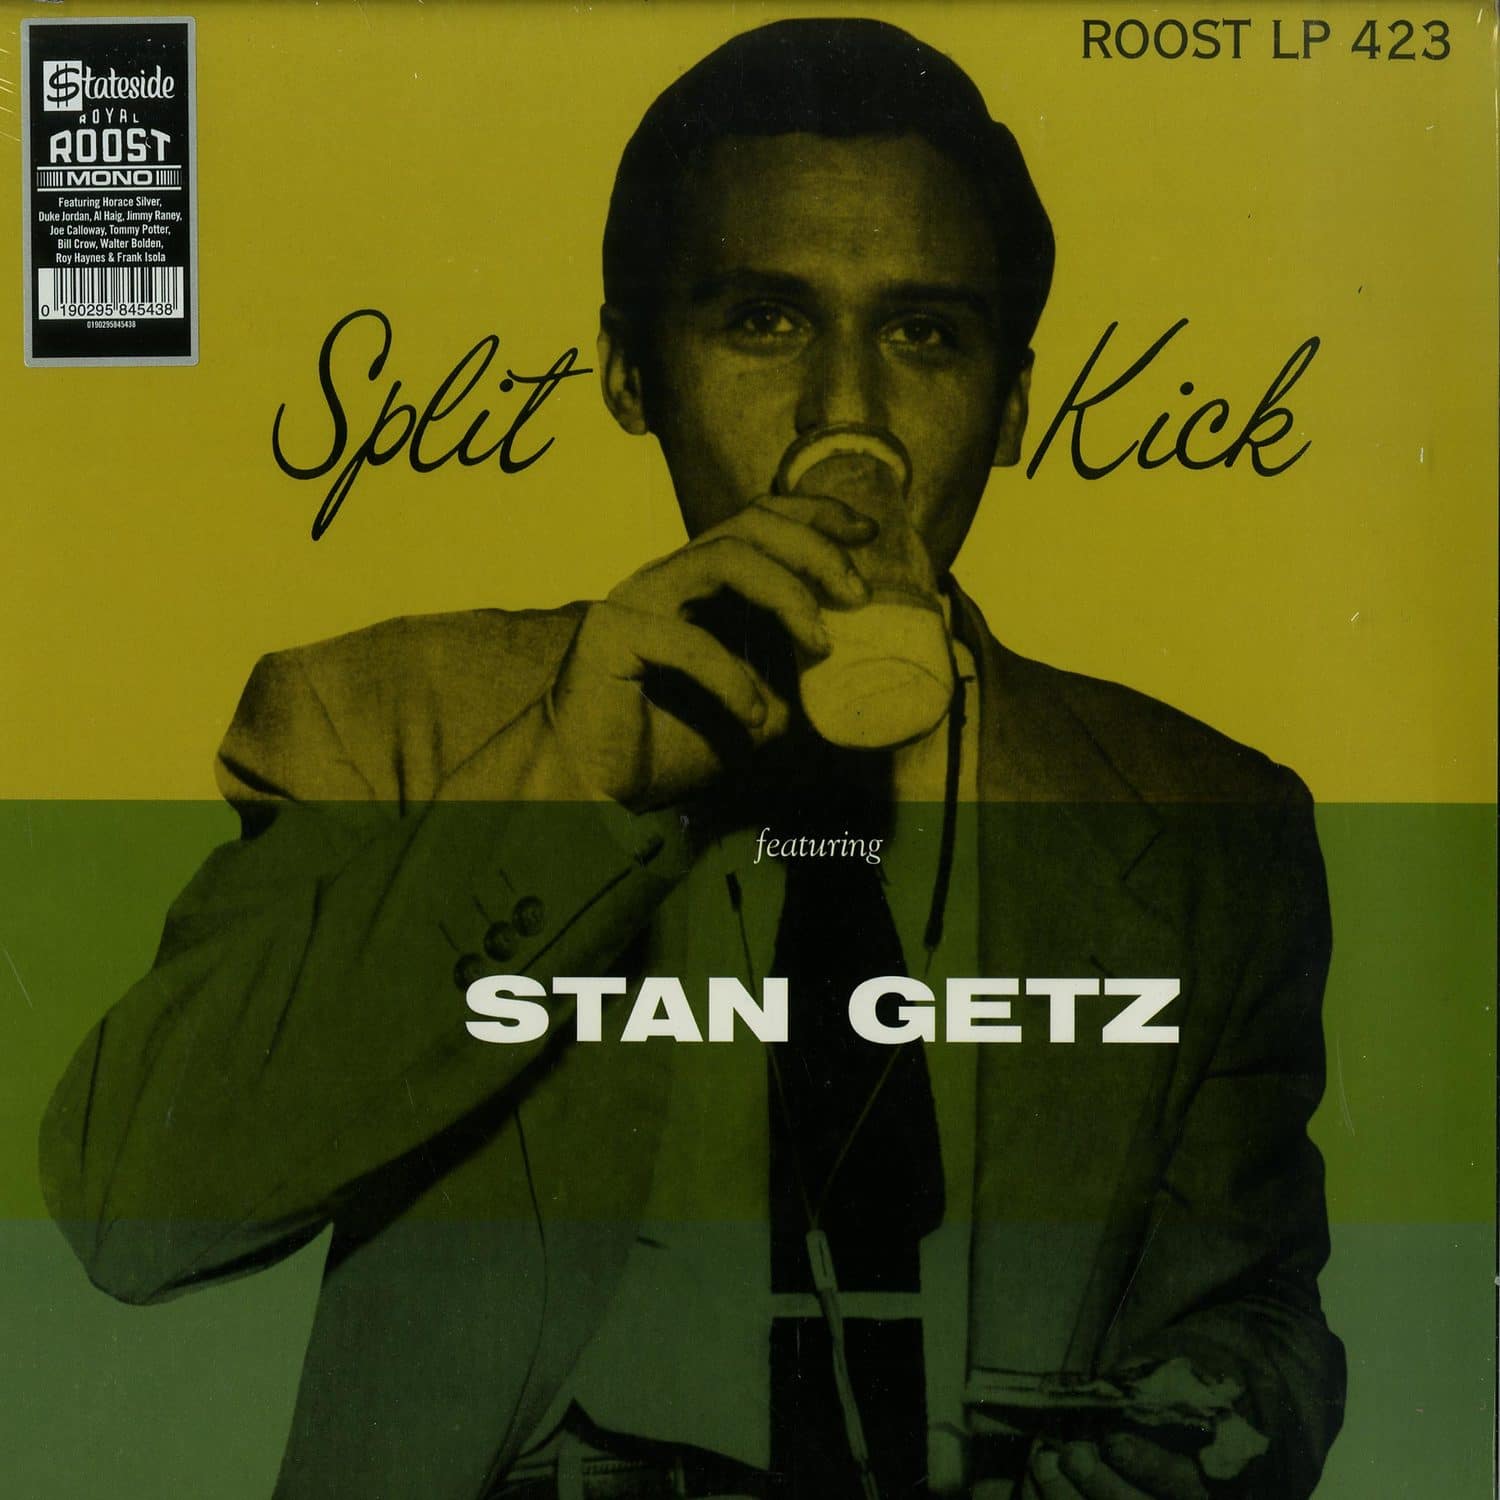 Stan Getz - SPLIT KICK 